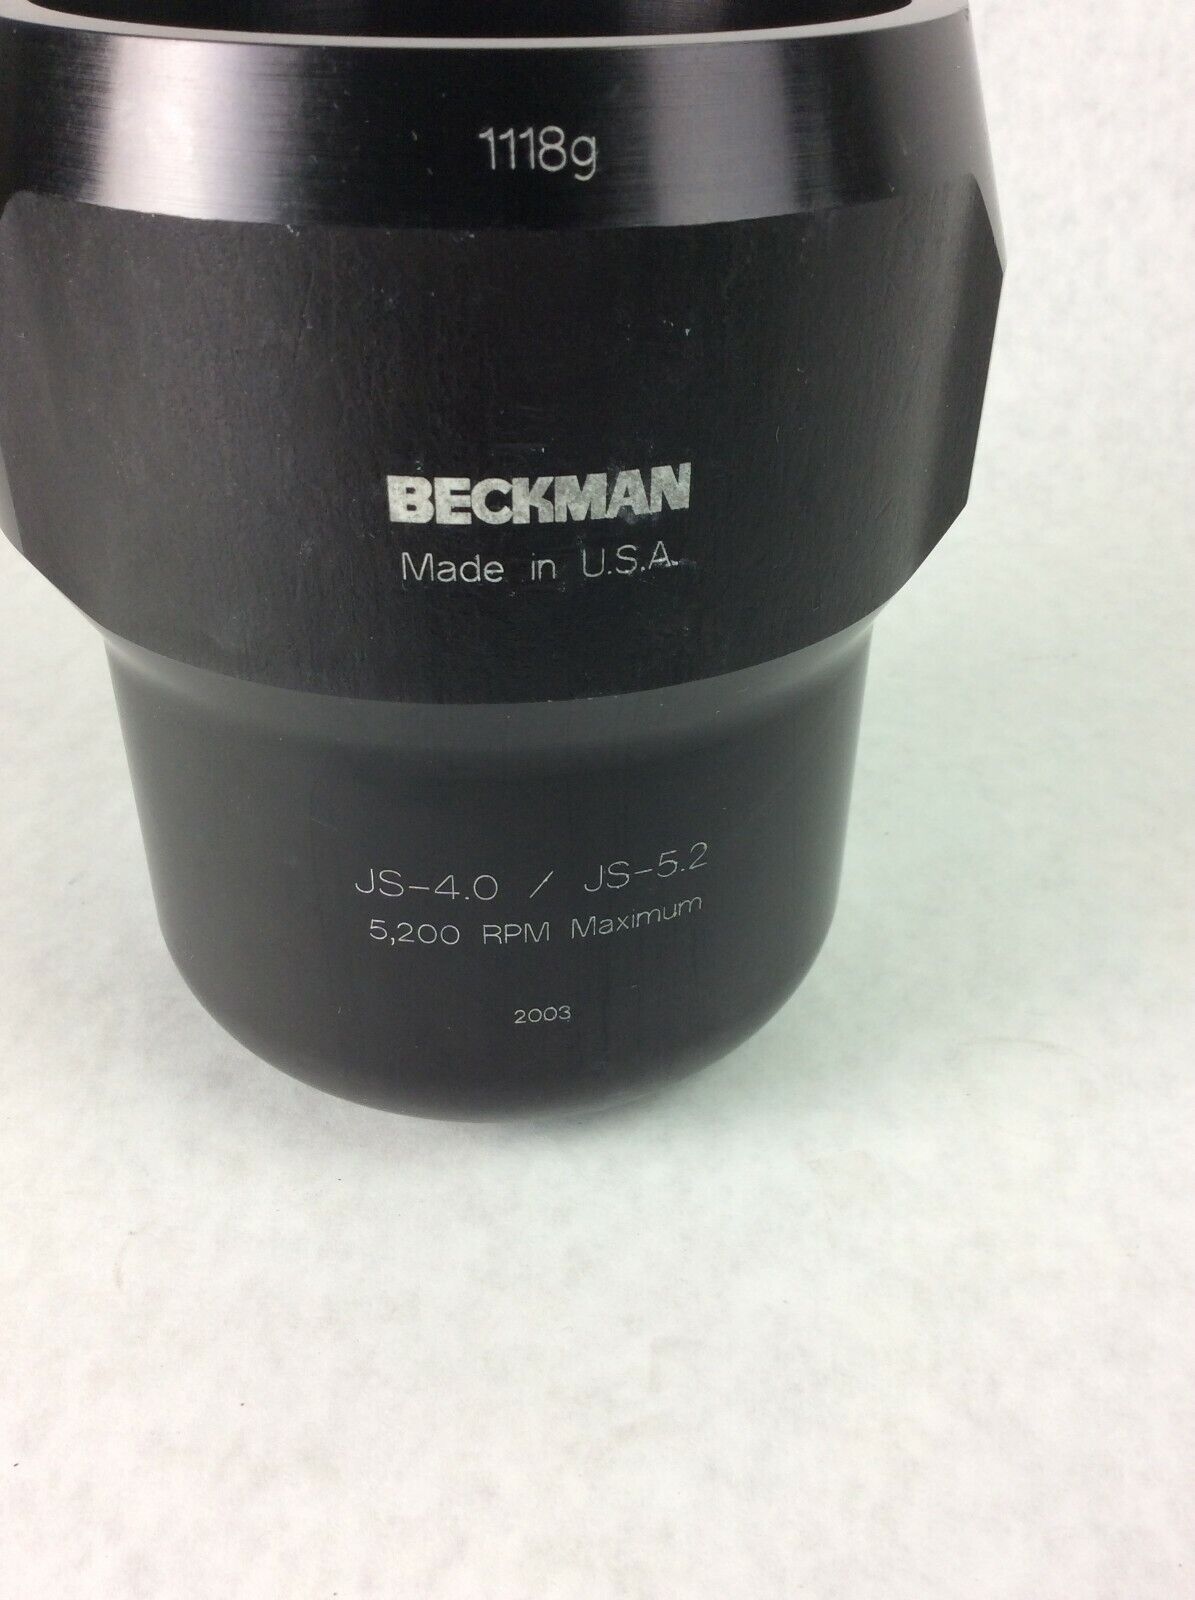 Beckman Coulter JS-4.0 JS-5.2 5200 RPM 1118g Centrifuge Swing Bucket